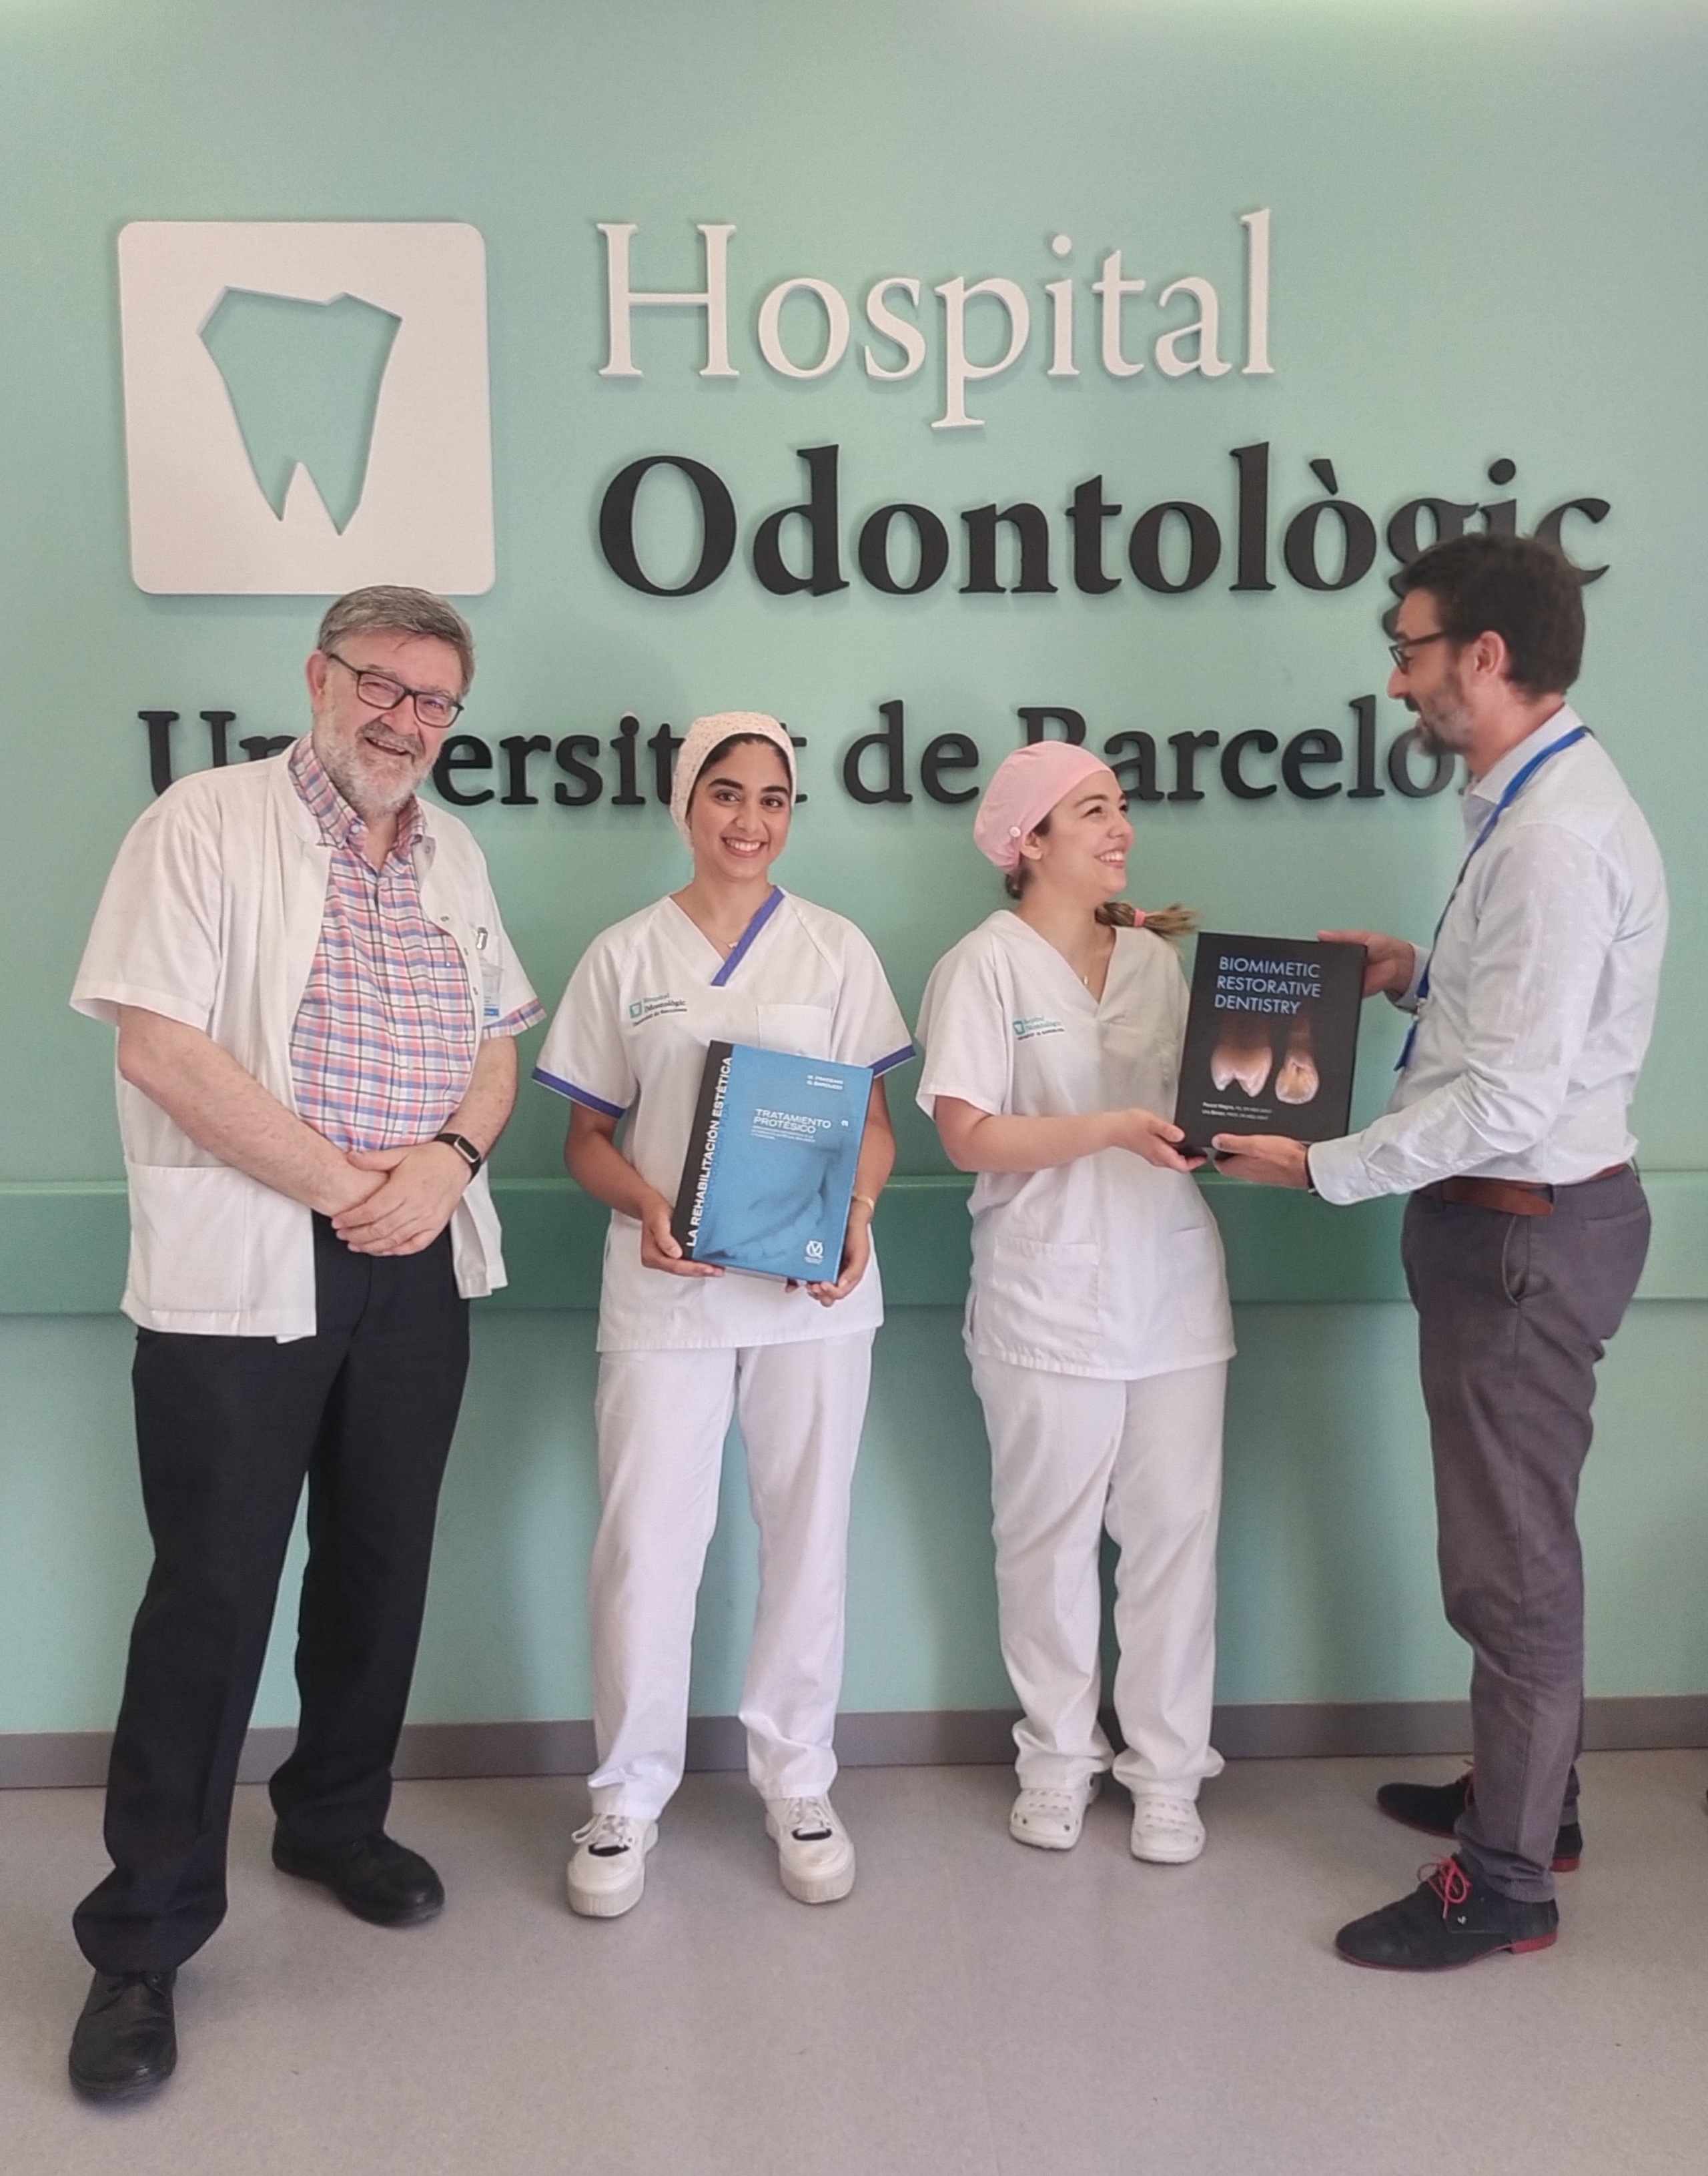 Lliurament de premis als millors dossiers odontològics del curs d’estiu de l’Hospital Odontològic Universitat de Barcelona